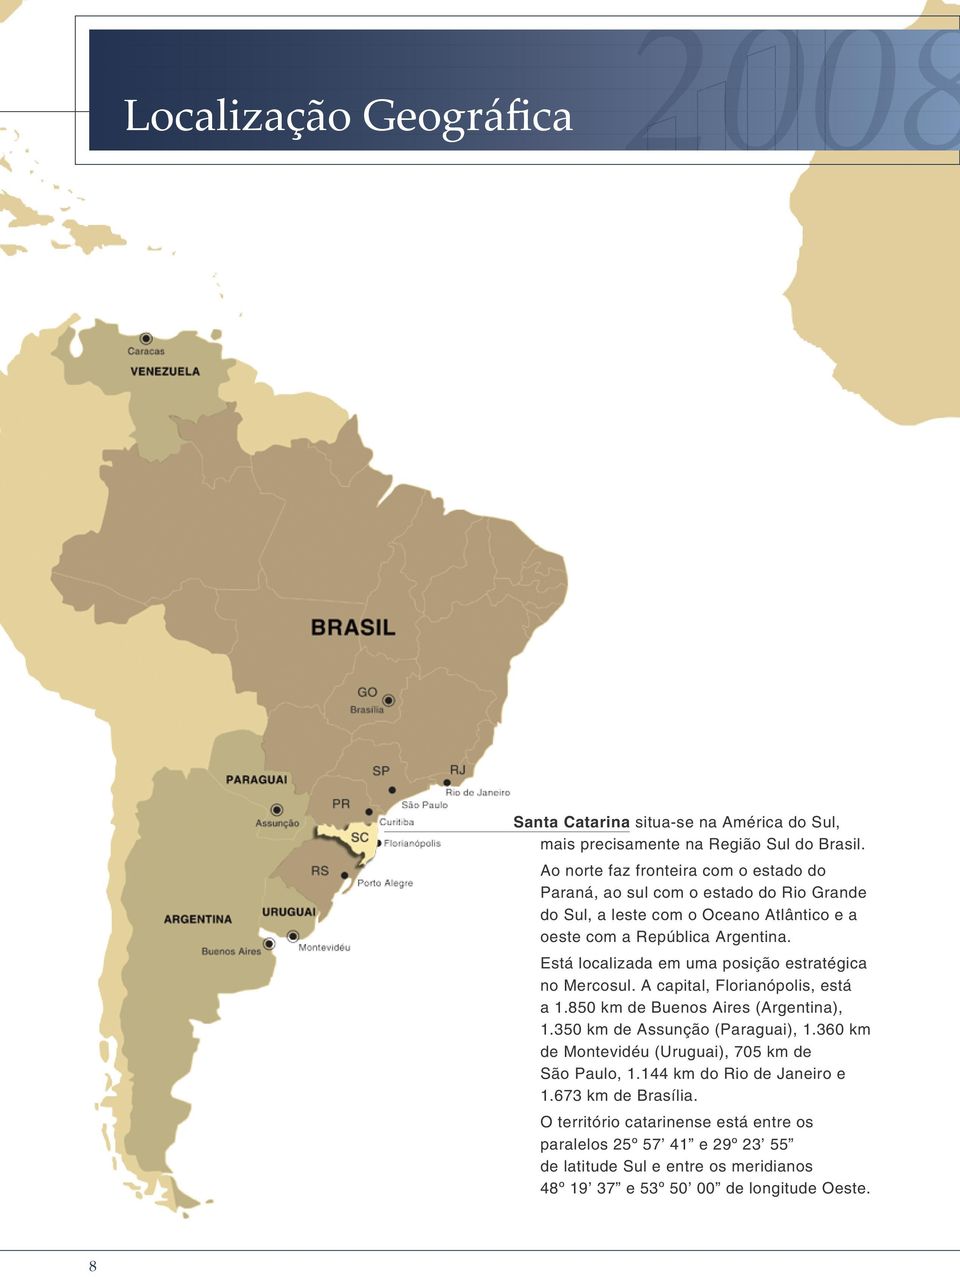 Está localizada em uma posição estratégica no Mercosul. A capital, Florianópolis, está a 1.850 km de Buenos Aires (Argentina), 1.350 km de Assunção (Paraguai), 1.